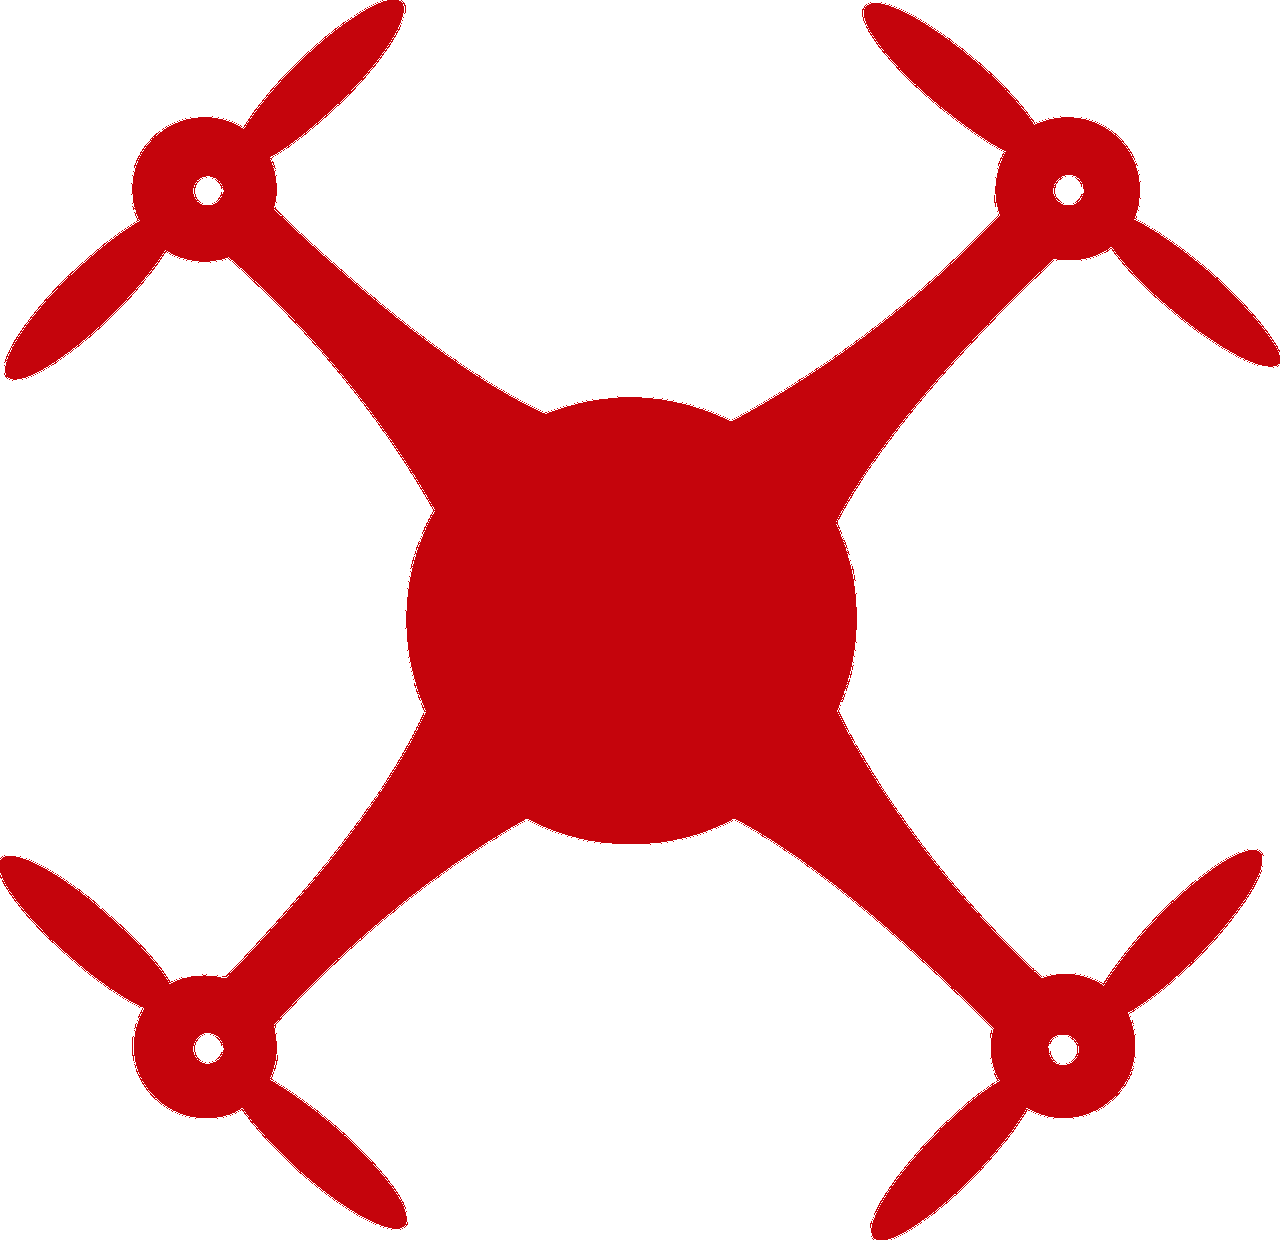 quadcopter drone icon